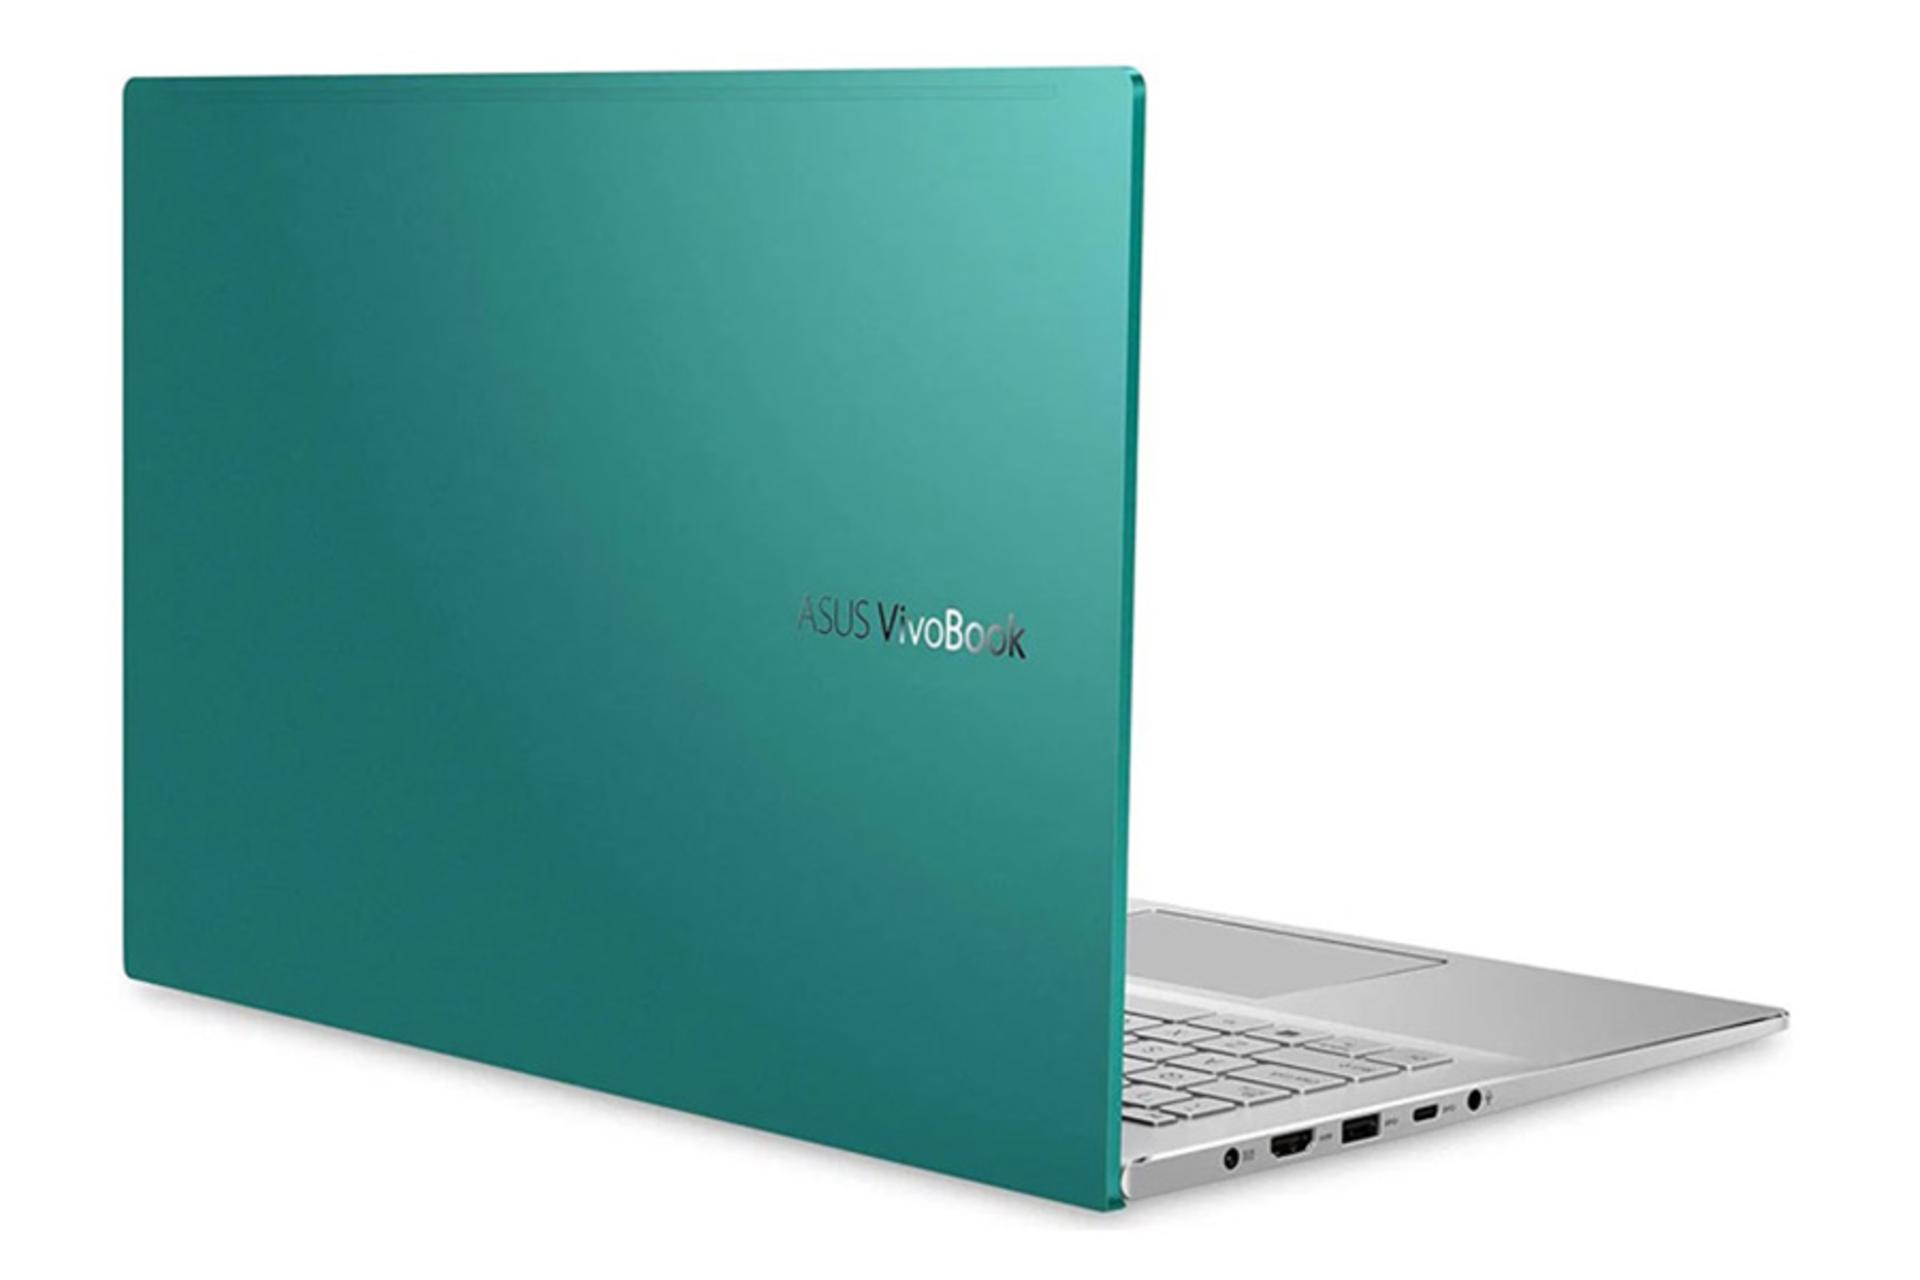 نمای پشت لپ تاپ ایسوس ویووبوک S15 S533 رنگ سبز